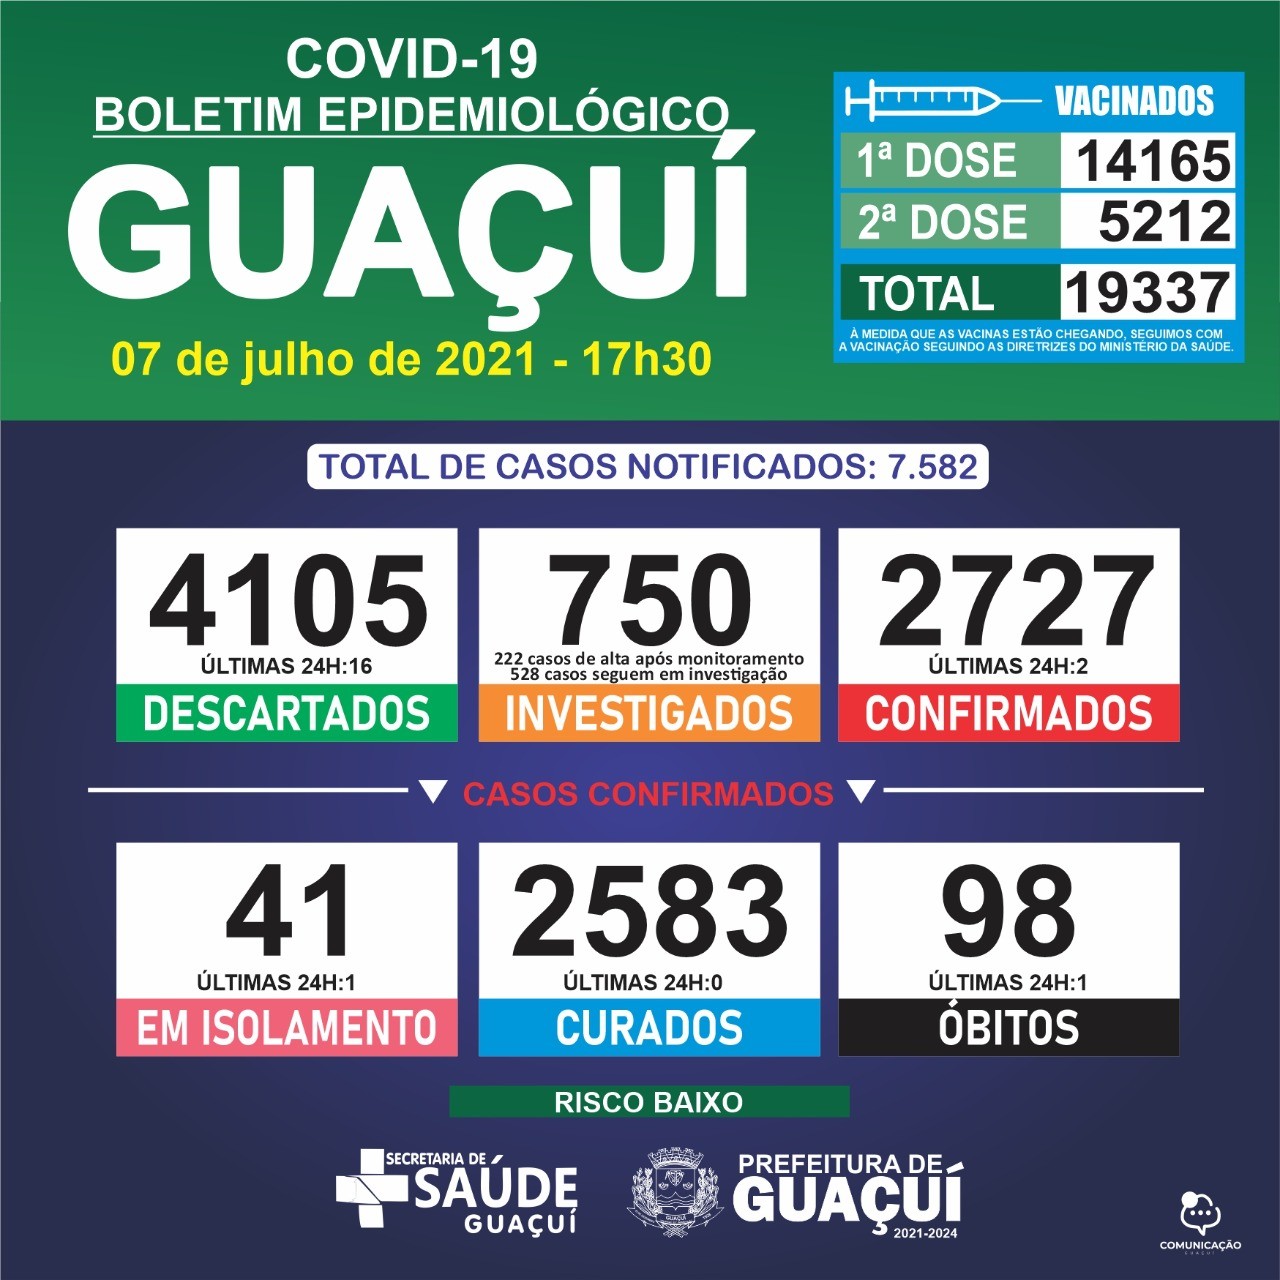 Boletim Epidemiológico 07/07/21: Guaçuí registra 1 óbito e 2 casos confirmados nas últimas 24 horas